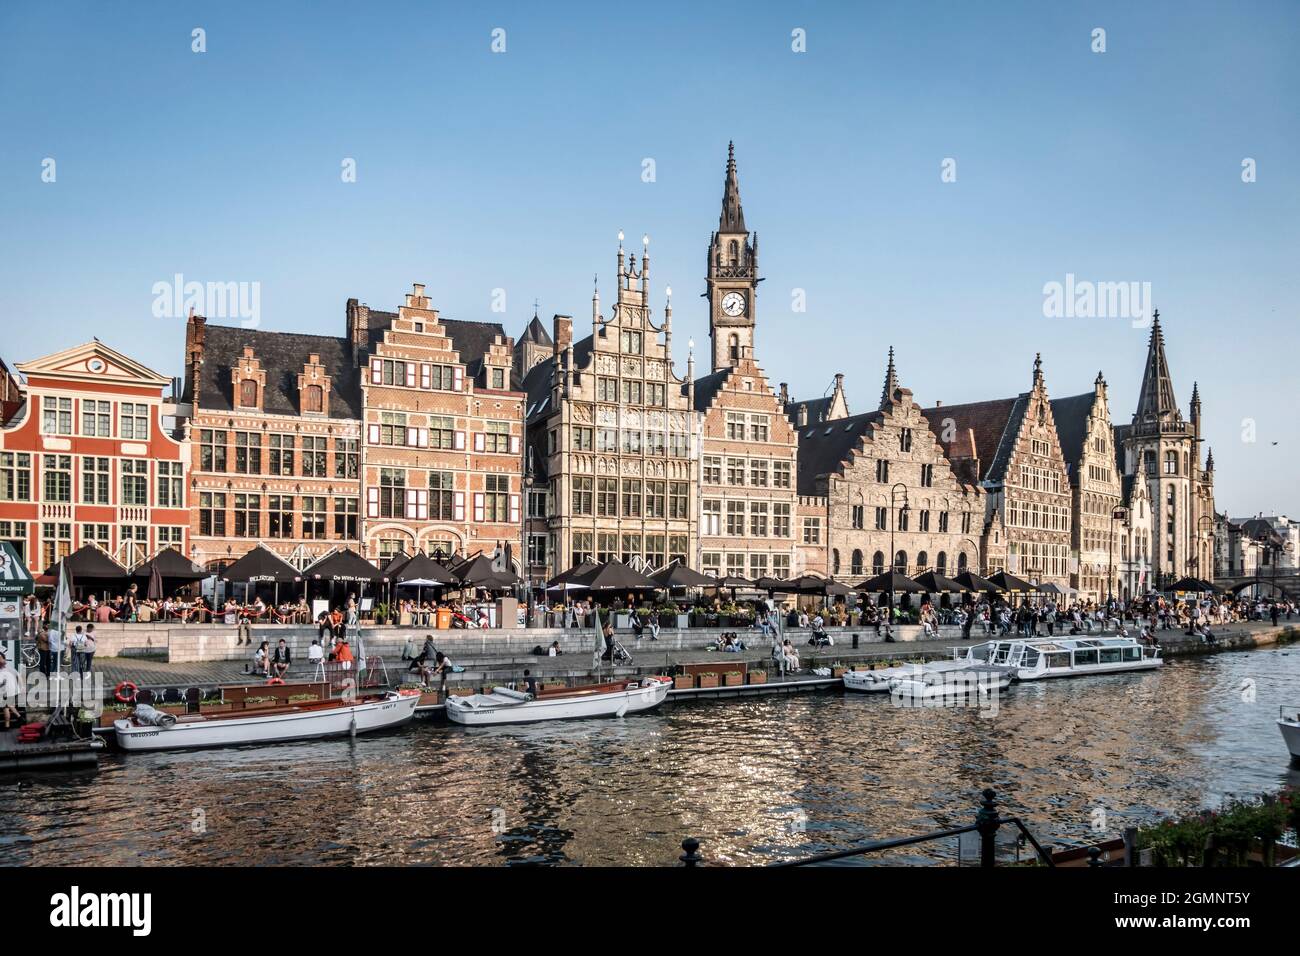 Touristenboot auf dem Fluss Leie, Ganslei Kai, Rathaus der Vrije Schippers, mittelalterliche Häuser, Gent, Flandern, Belgien, Europ Stockfoto